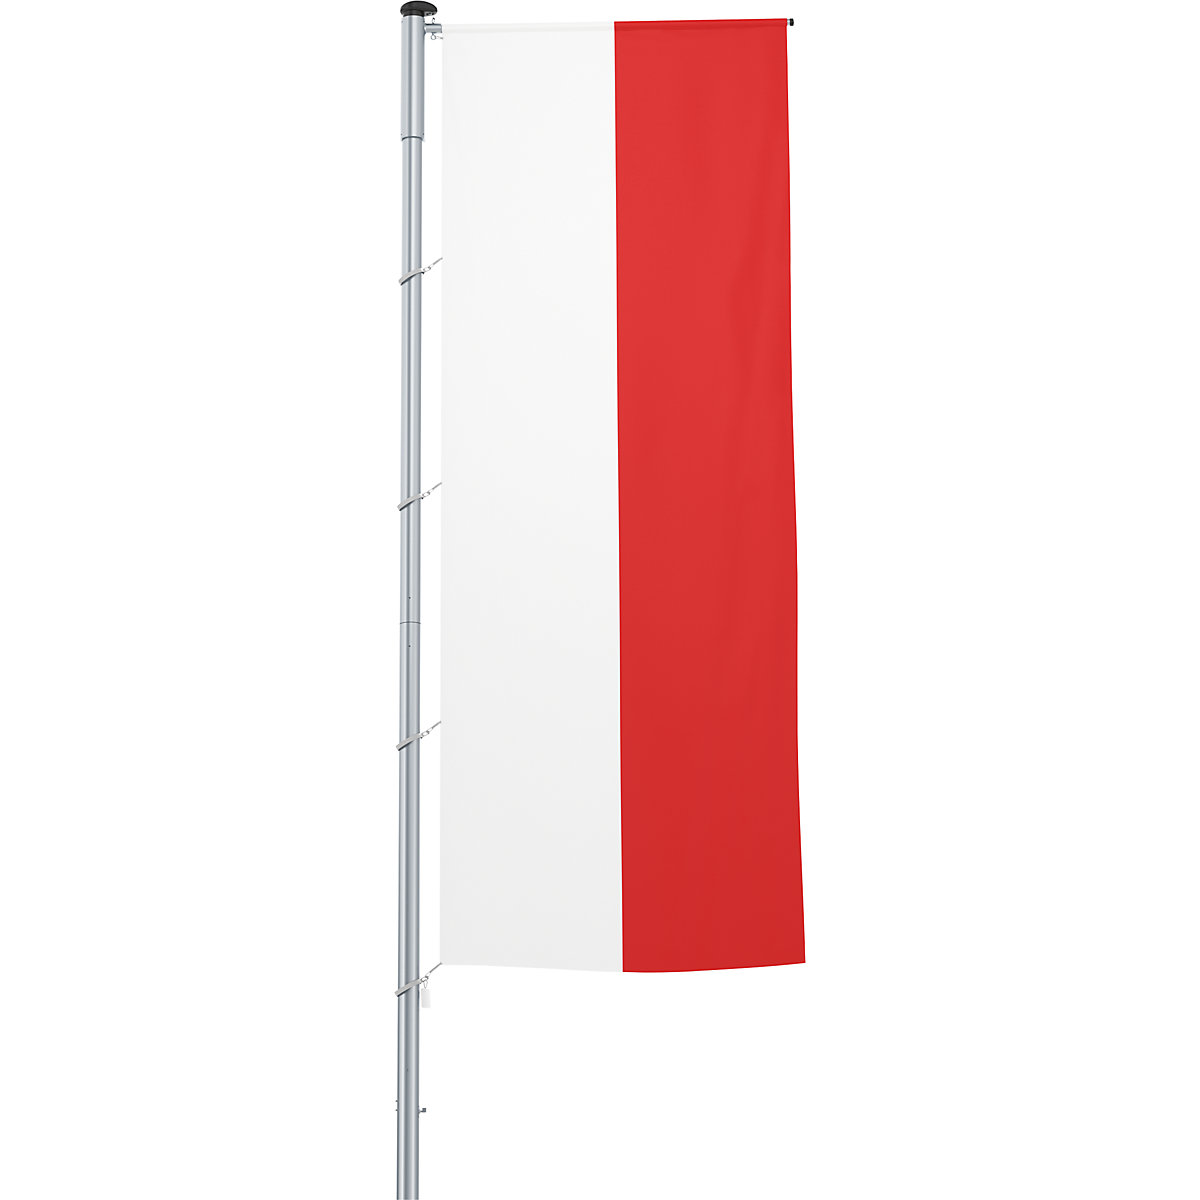 Vlajka na pozdĺžne upevnenie na stožiar/národná vlajka – Mannus, formát 1,2 x 3 m, Poľsko-15